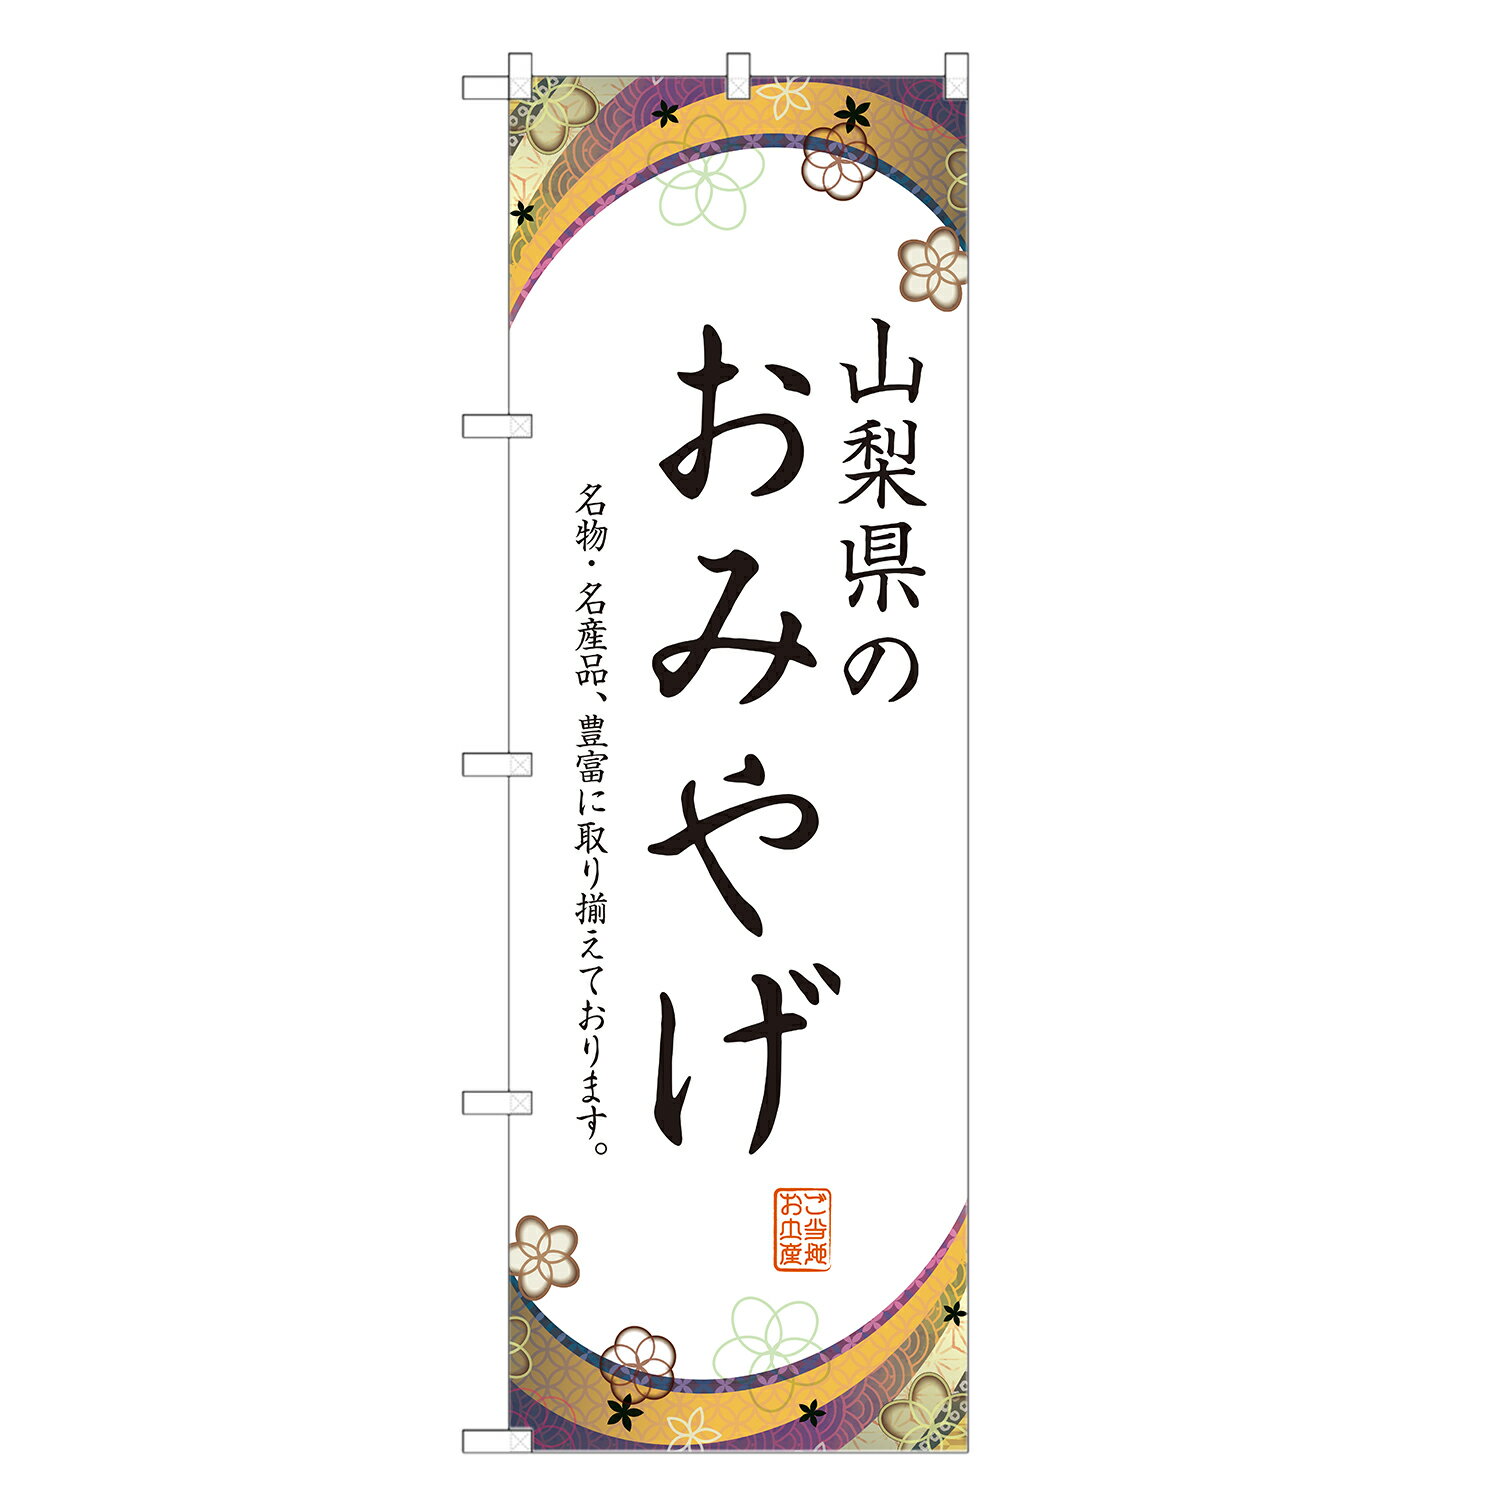 のぼり旗 山梨のお土産 のぼり 四方三巻縫製 T09-0683A-R